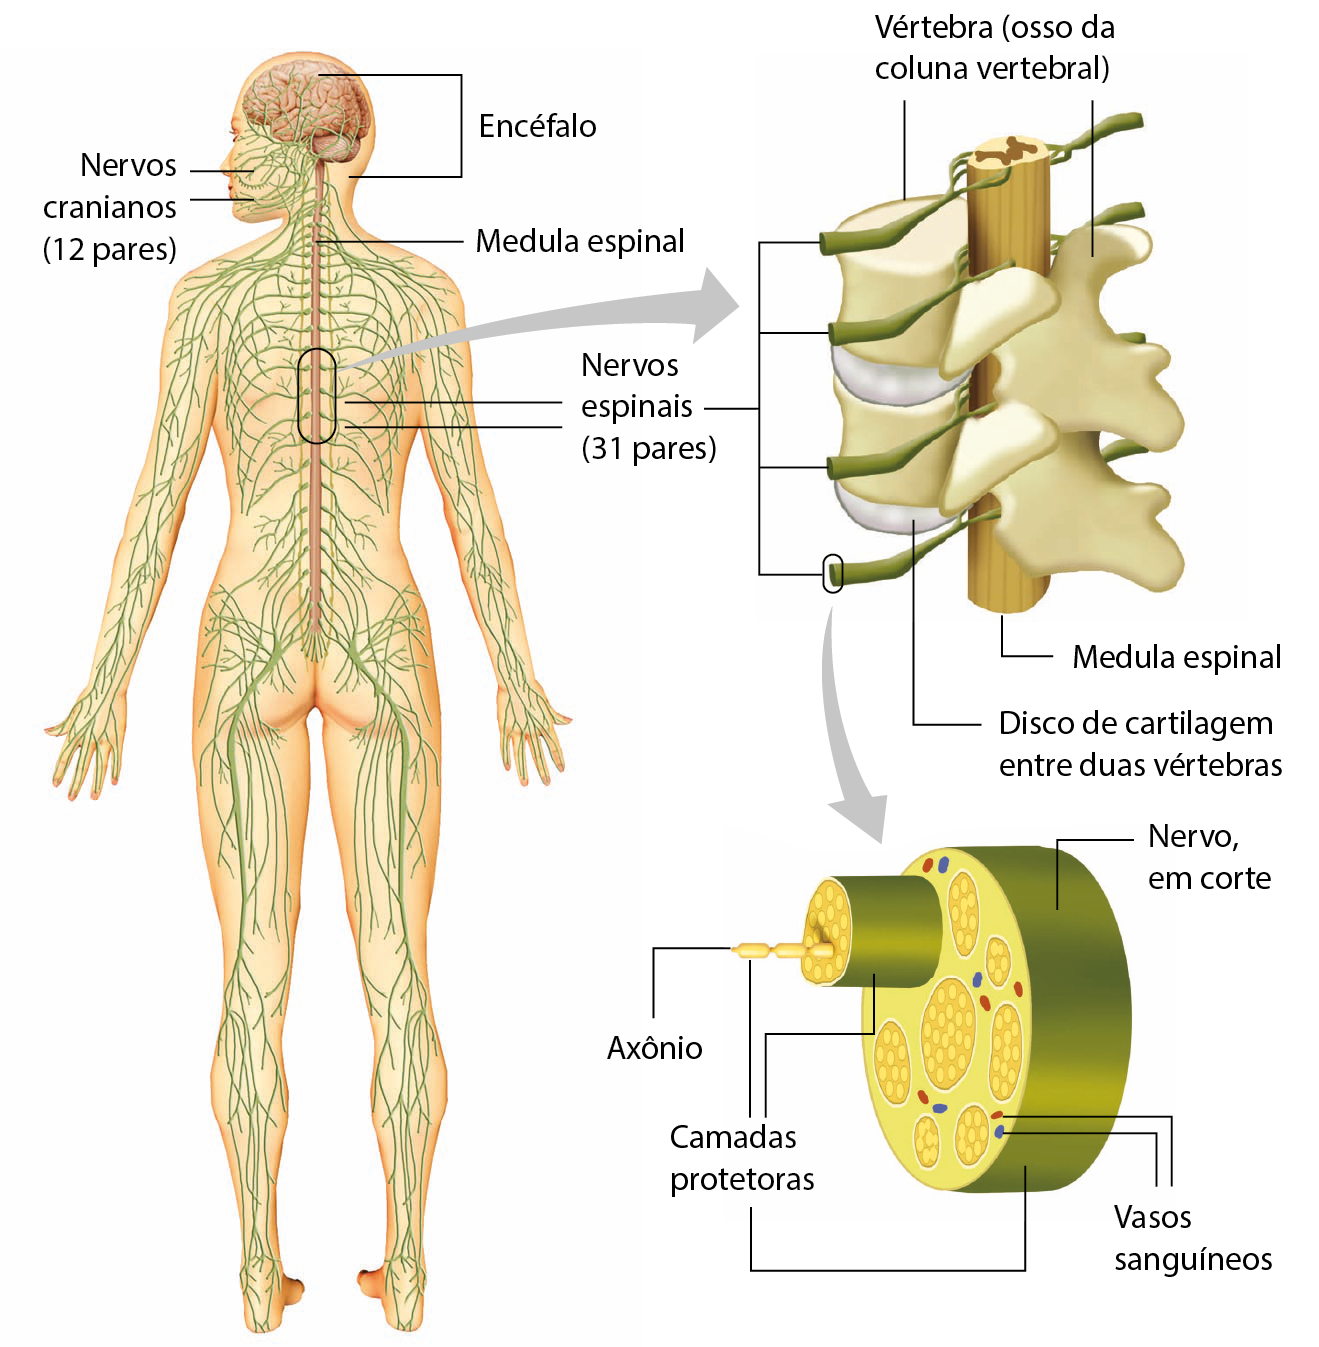 Ilustração. Uma pessoa de costas, de pé, e com os braços esticados e um pouco afastados do corpo. Os nervos estão ilustrados por todo o corpo. Na cabeça: encéfalo e nervos cranianos (12 pares). No pescoço: medula espinhal. Na coluna: nervos espinais (31 pares). Seta para detalhe de um trecho da coluna desenhado lateralmente: vértebra, osso da coluna vertebral. No centro, medula espinal. Entre as vértebras, disco de cartilagem entre duas vértebras. Saindo da medula, estruturas alongadas em verde. Da estrutura verde: seta para um nervo em corte, uma forma cilíndrica verde com conjuntos de círculos amarelos dentro e pequenas estruturas arredondadas azuis e vermelhas entre eles. As formas azuis e vermelhas são os vasos sanguíneos, as formas amarelas são os axônios e as capas verde ao redor do conjunto de axônios e do nervo é a camada protetora.